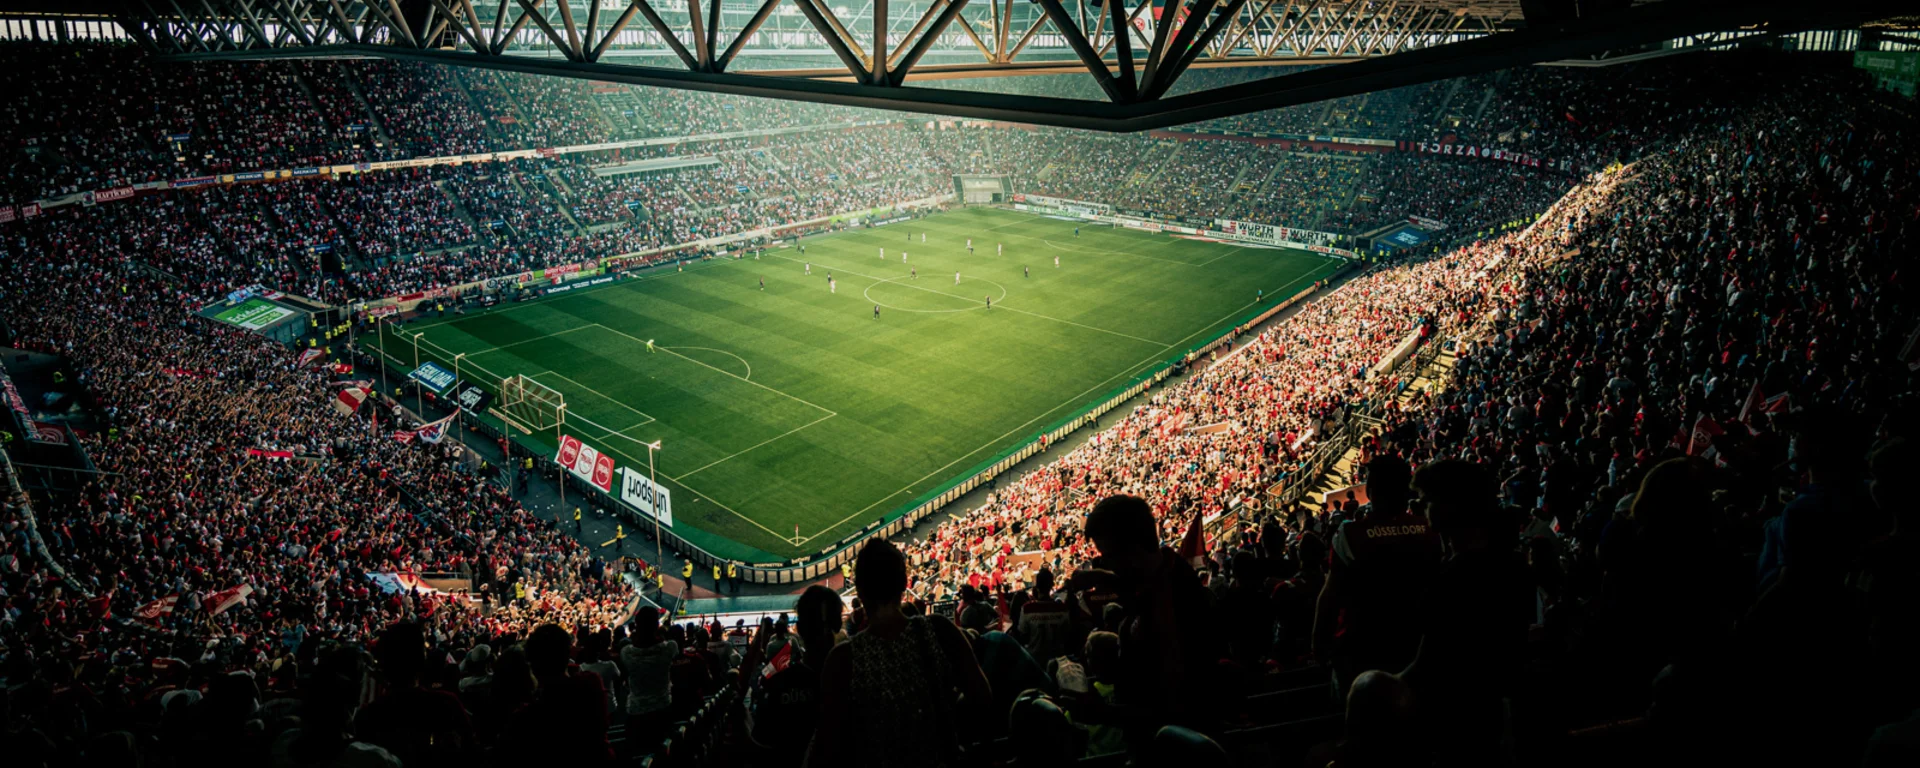 Fußballstadion während eines Spiels